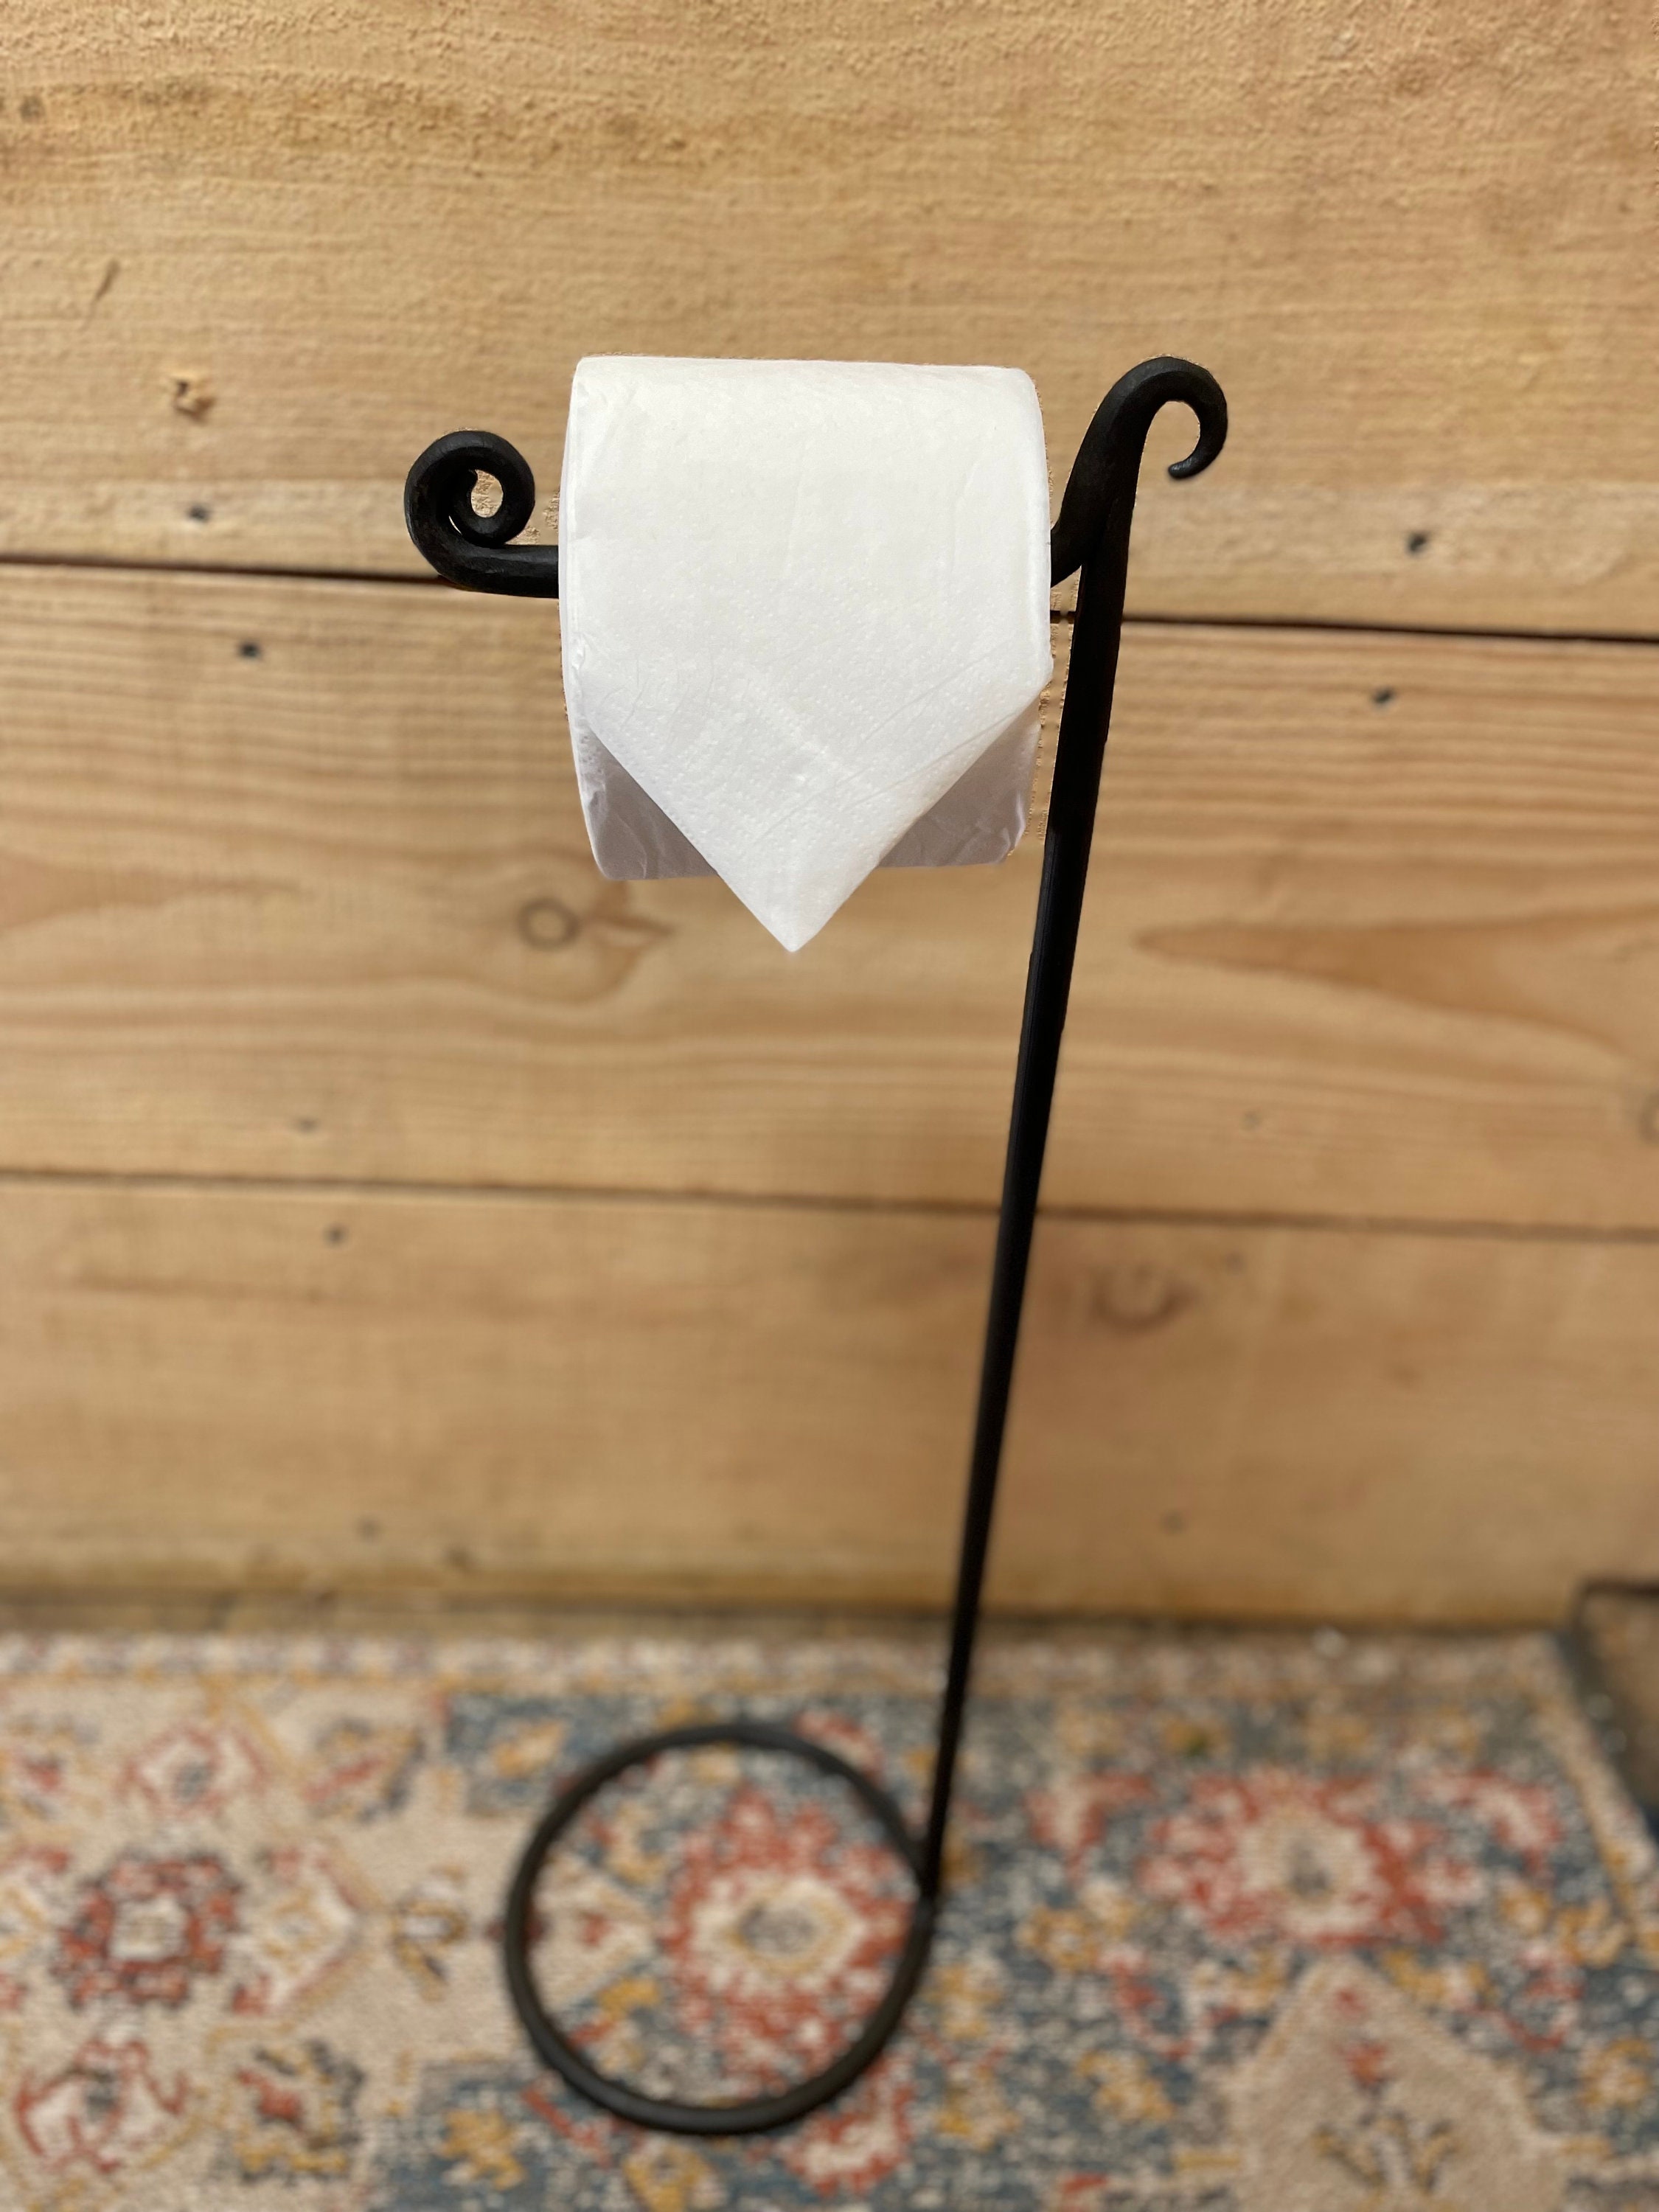 Free Standing Toilet Paper Holder Wooden Shelf Multiple Roll